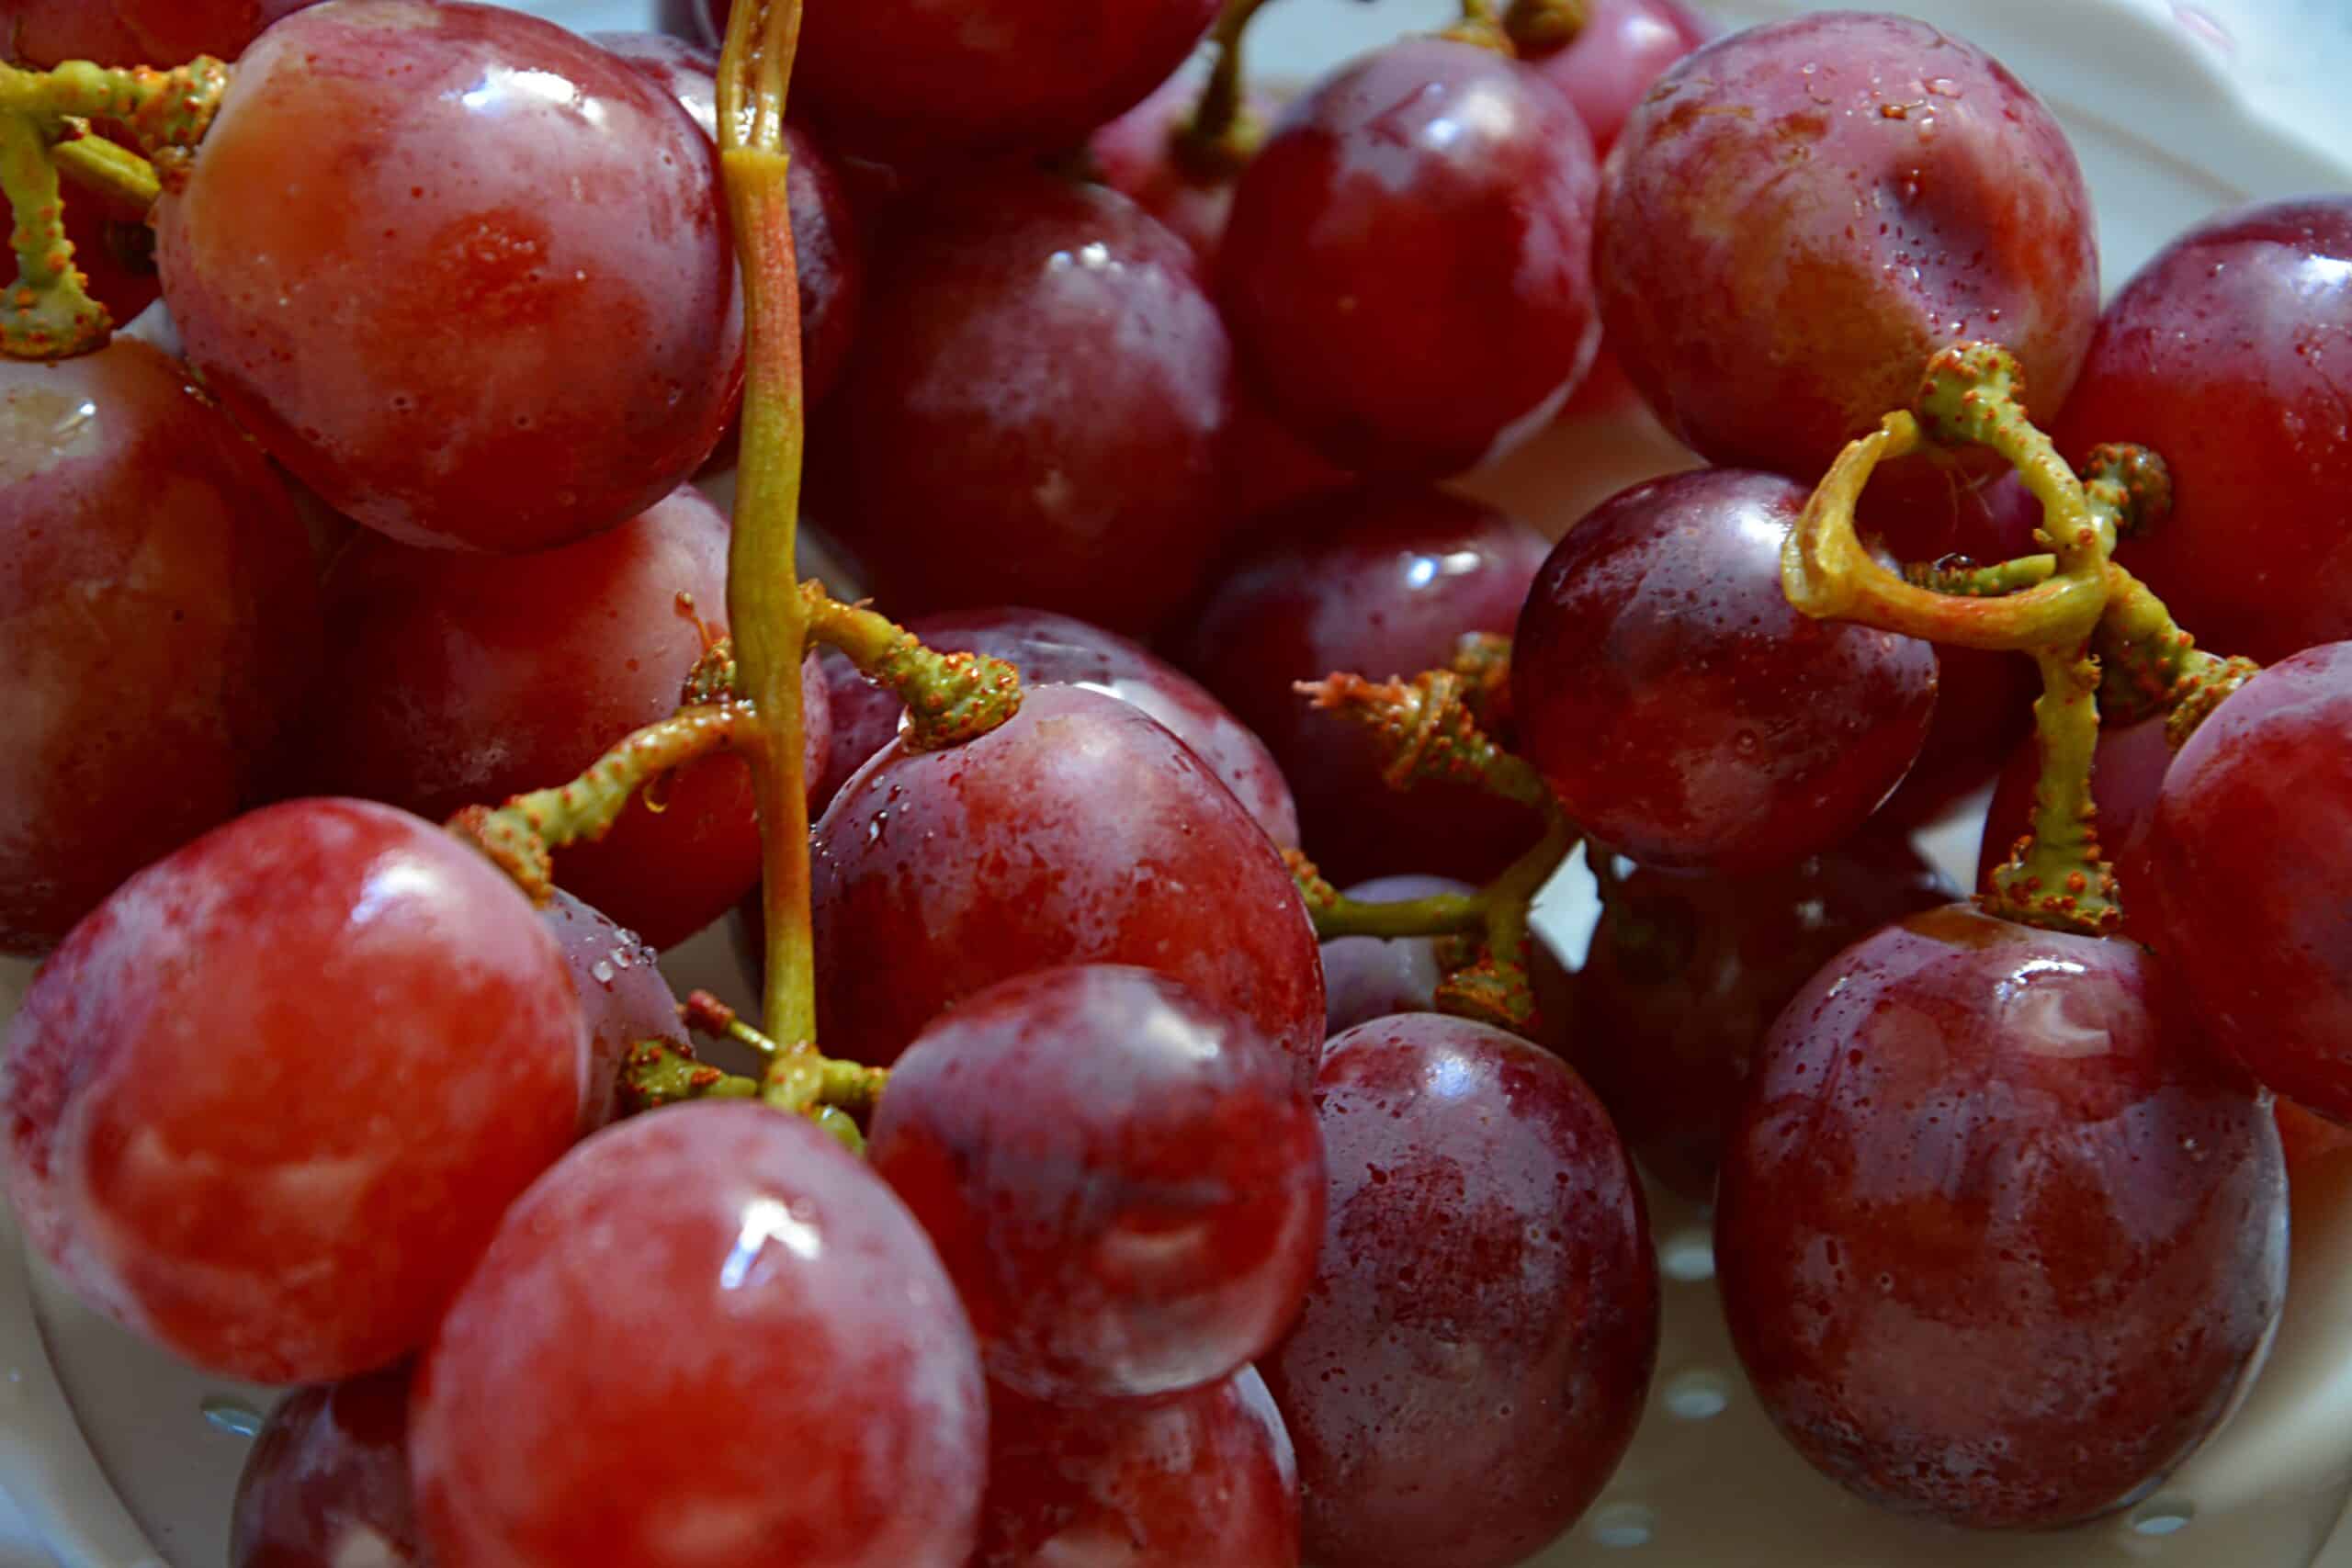 Frescas o en conserva, las uvas de Nochevieja que no pueden faltar